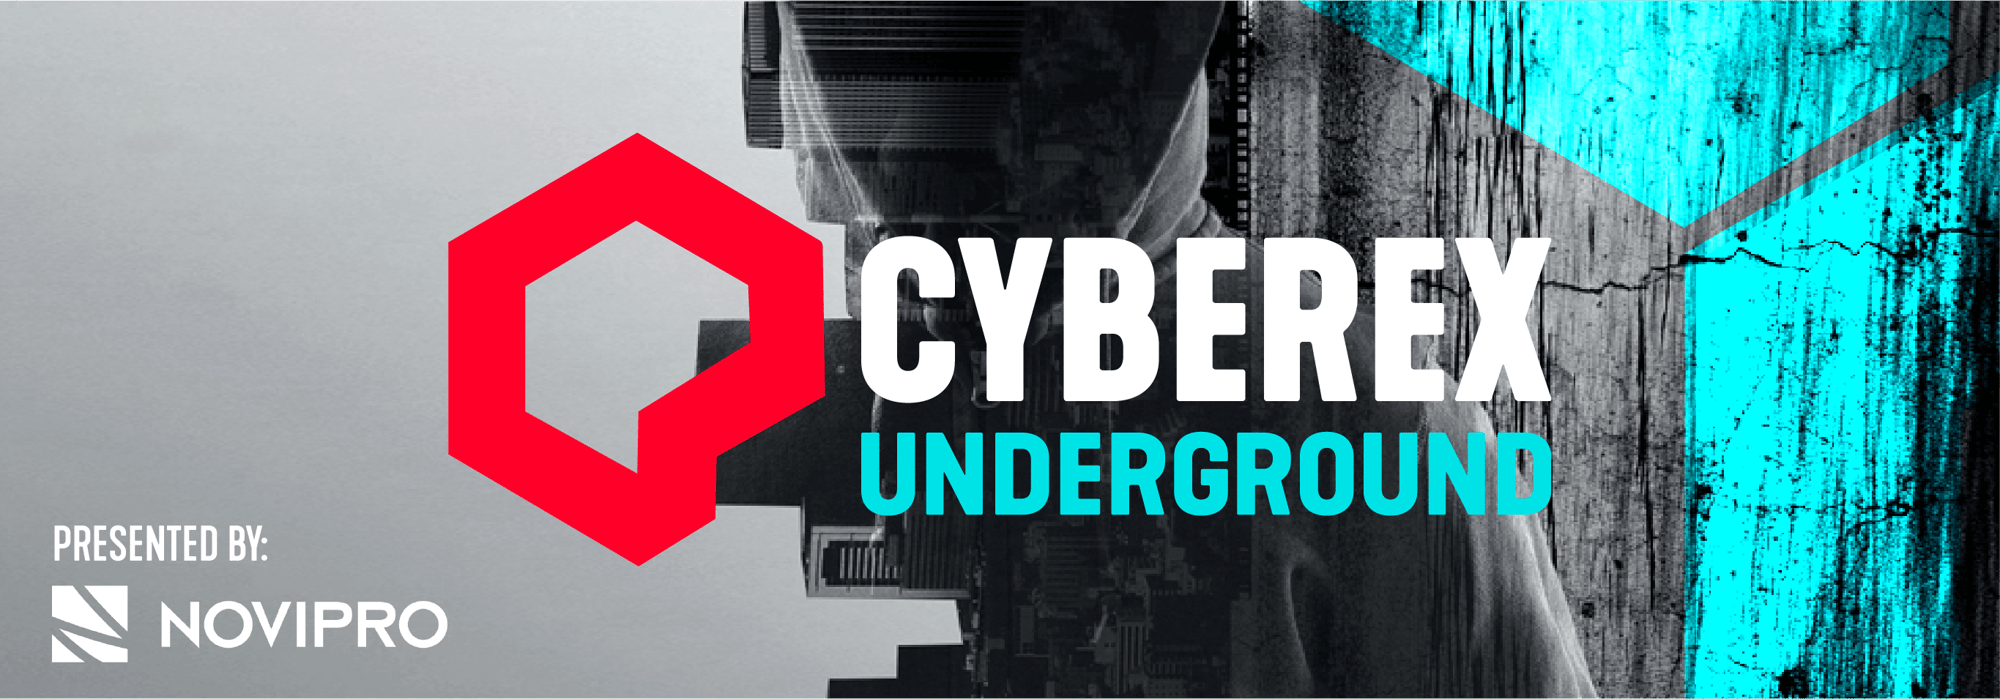 Cyberex underground_landingpage_ENG_header